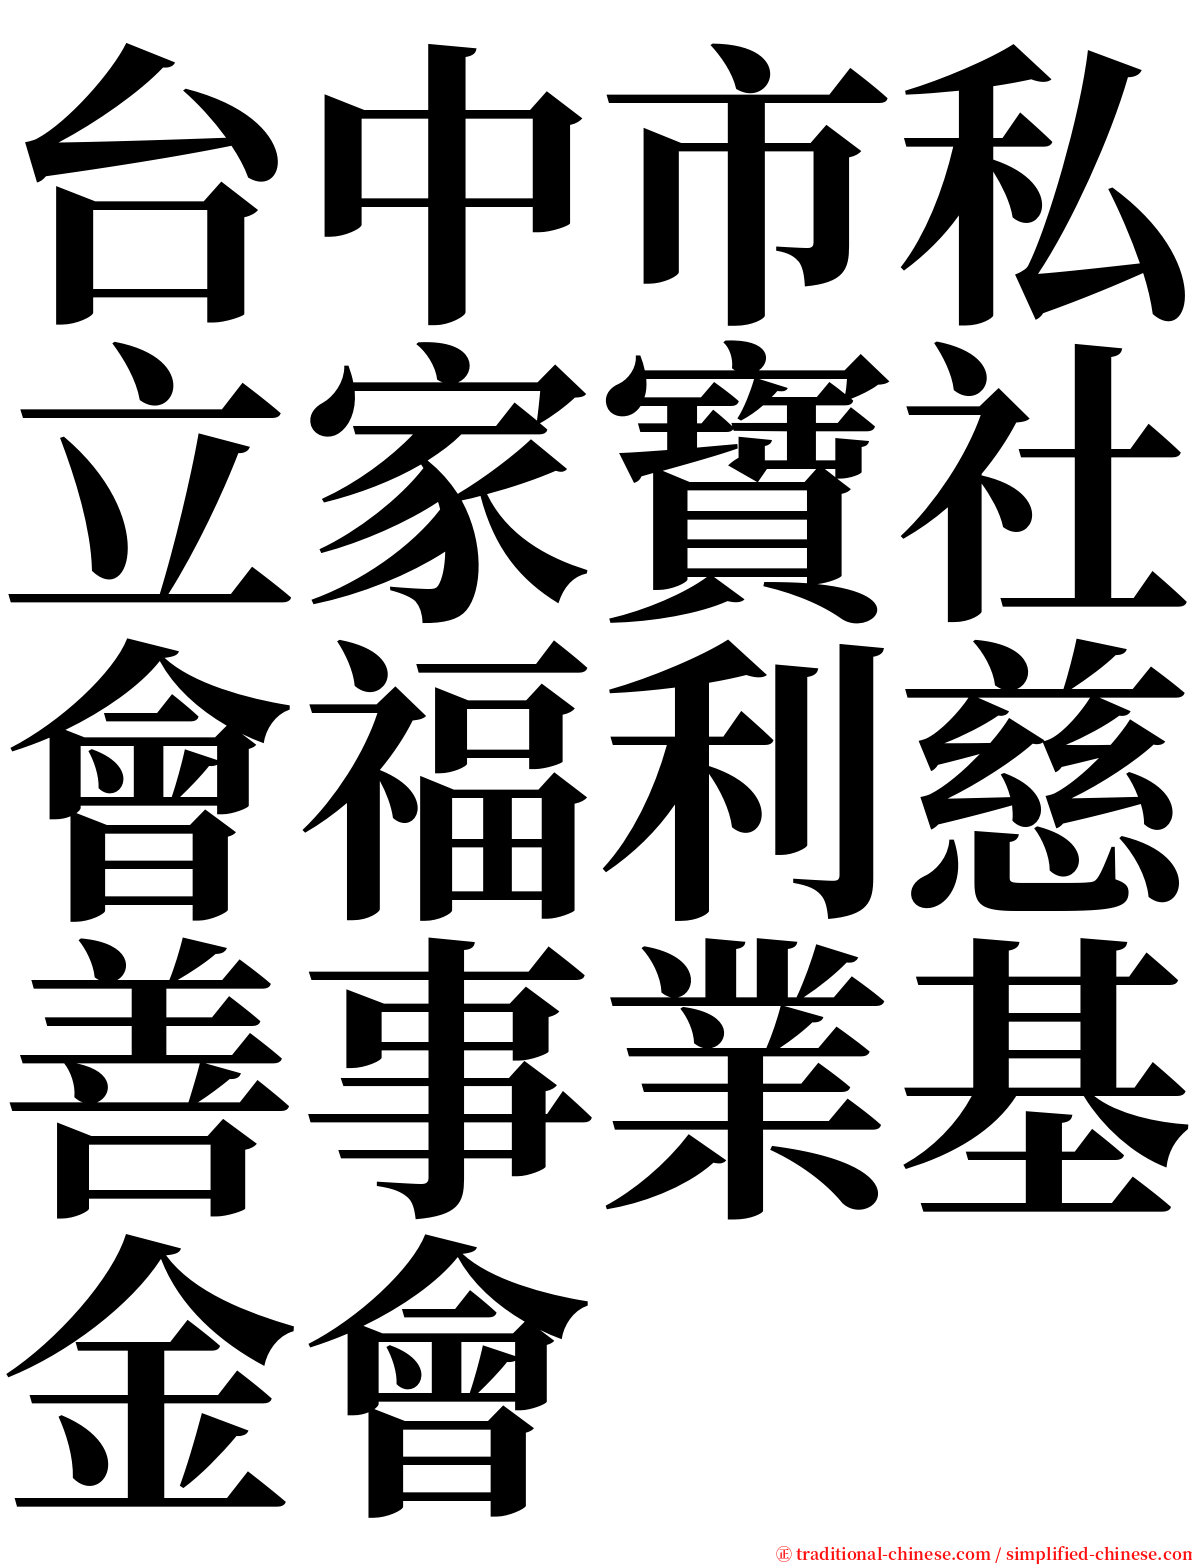 台中市私立家寶社會福利慈善事業基金會 serif font